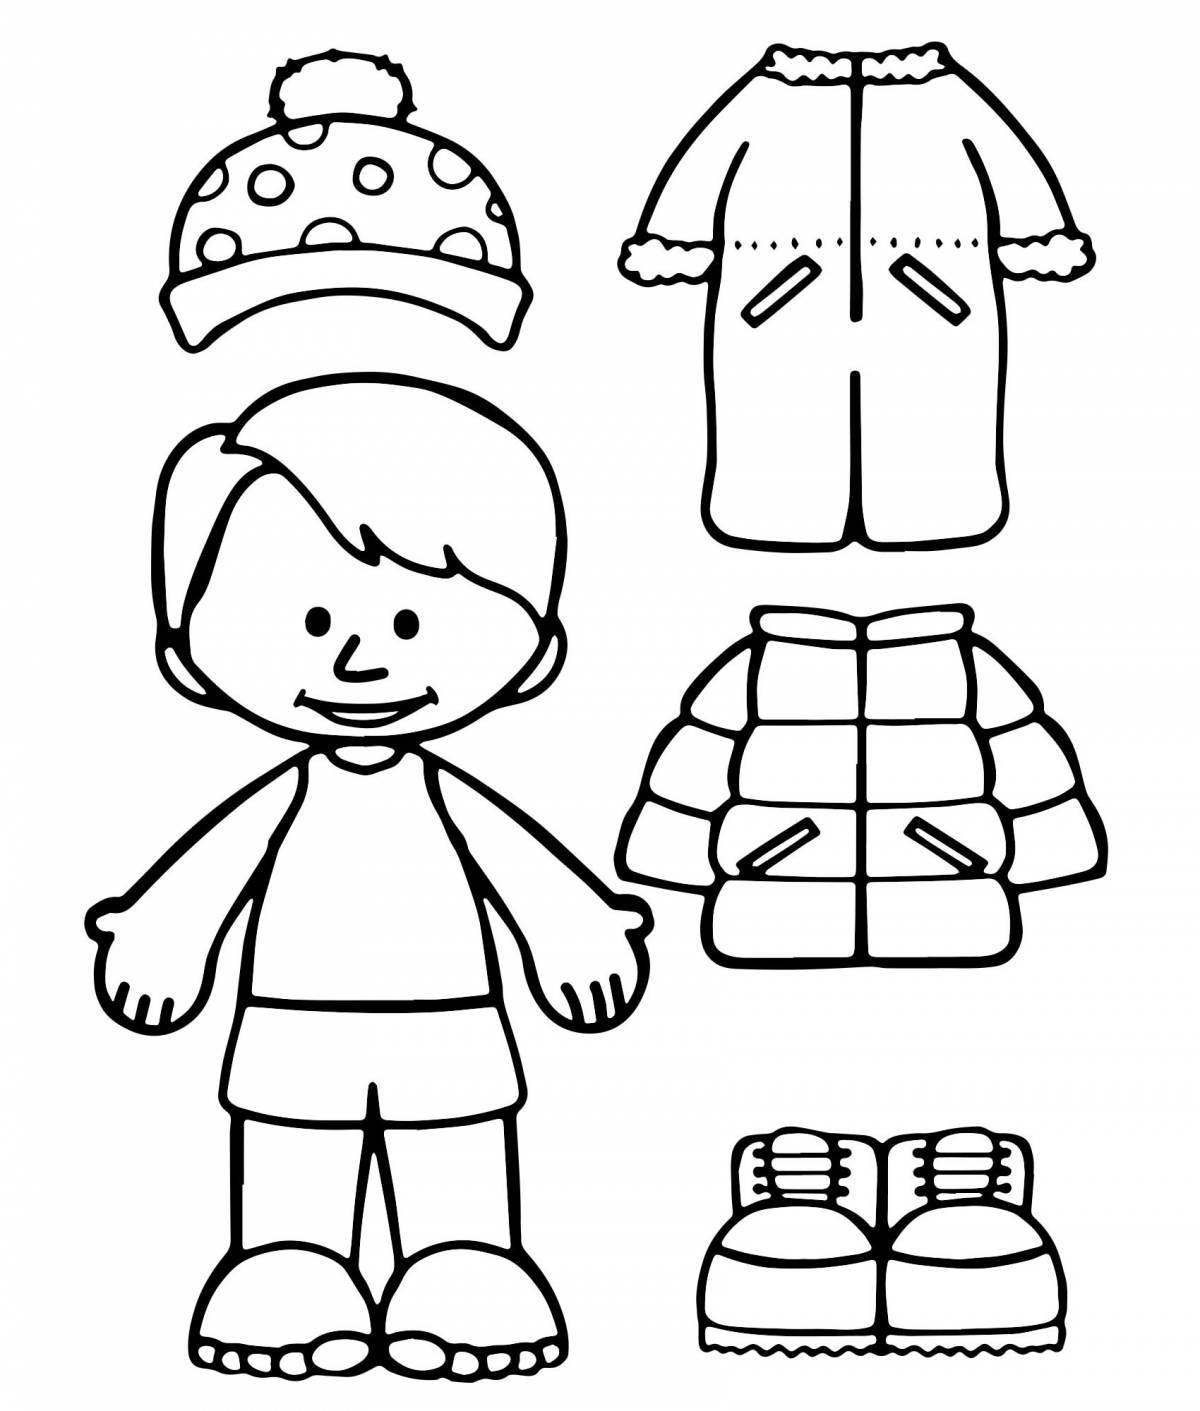 Светящаяся раскраска для детей мальчик в зимней одежде